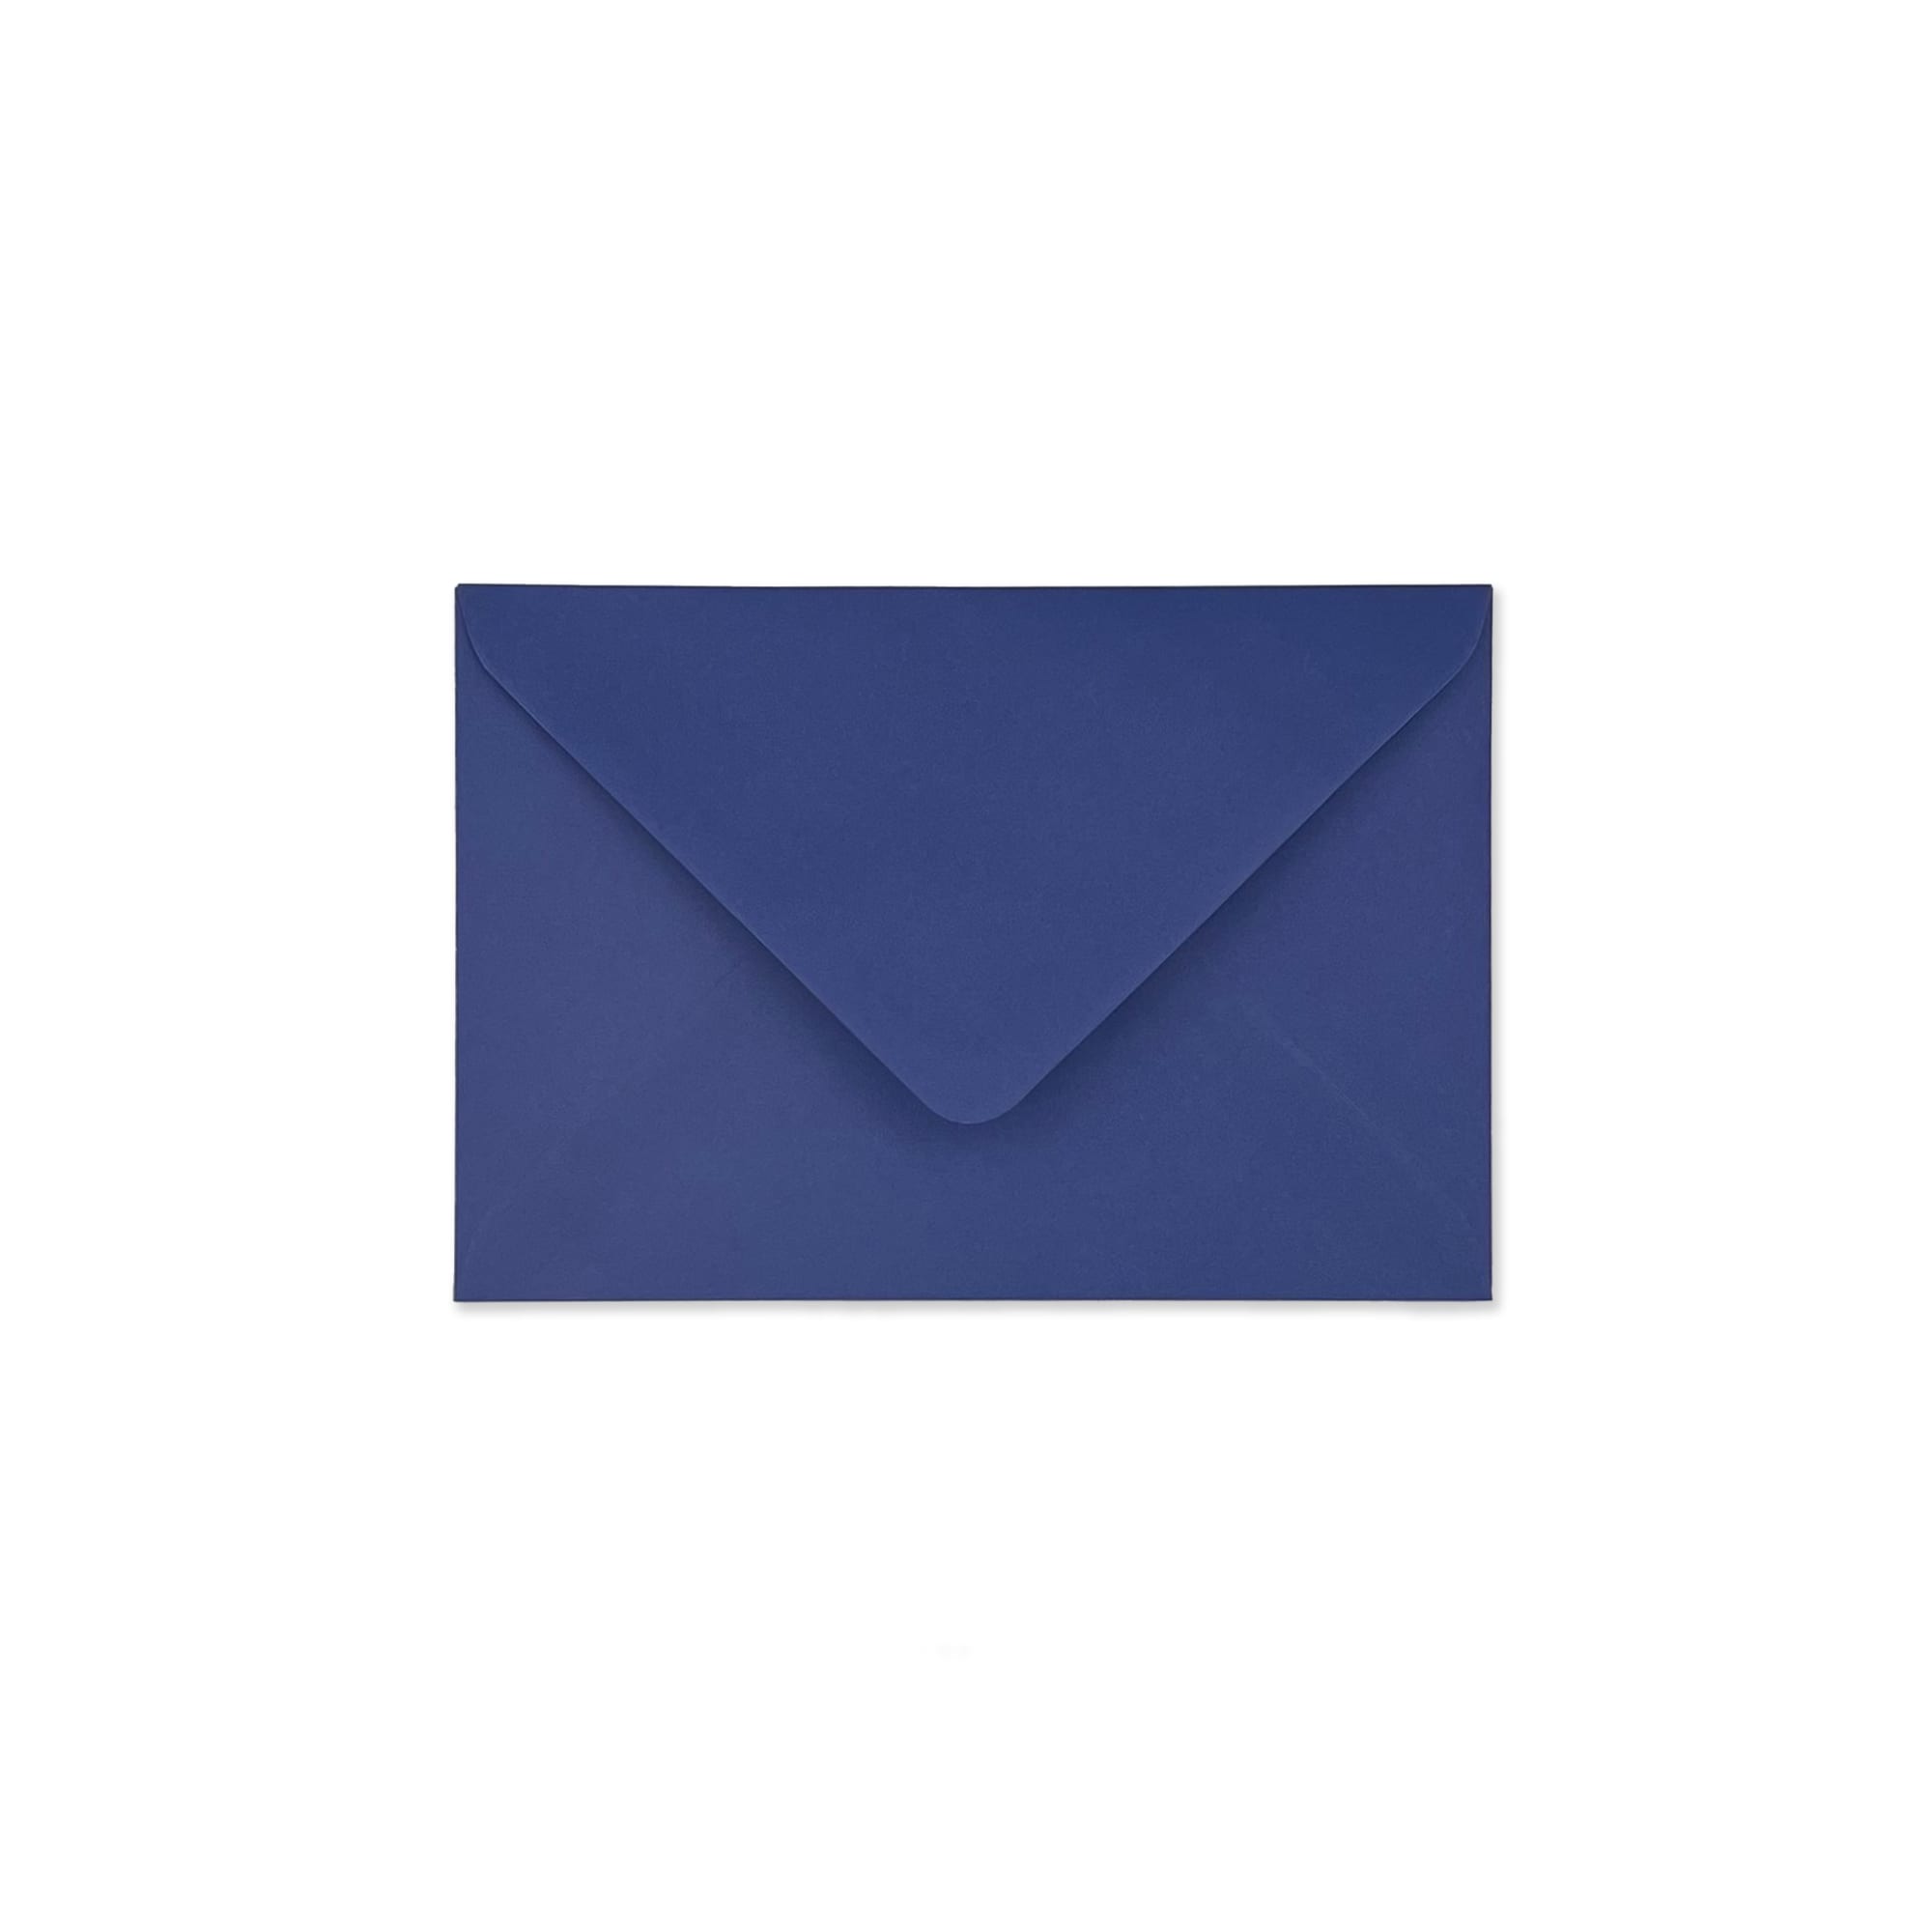 Indigo Blue 120x175mm Envelopes 100gsm